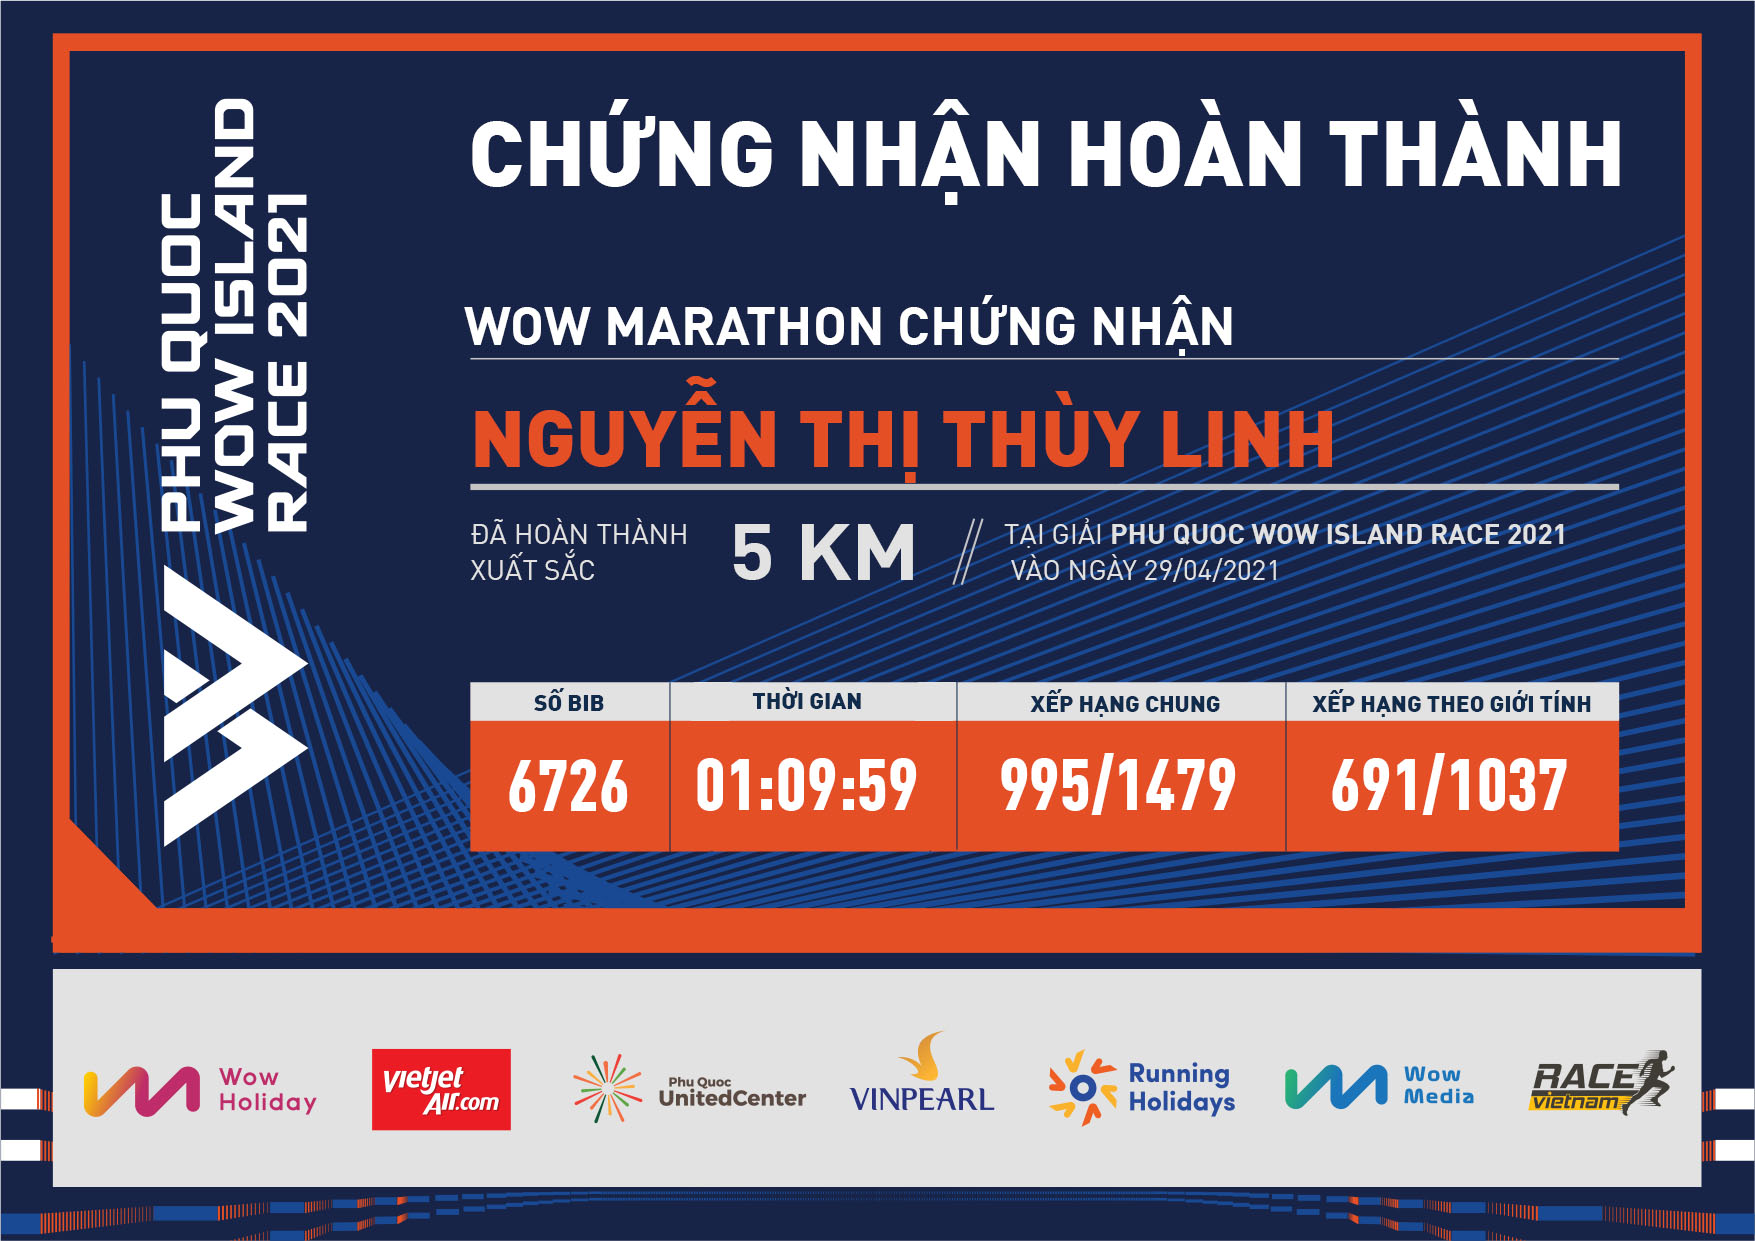 6726 - Nguyễn Thị Thùy Linh